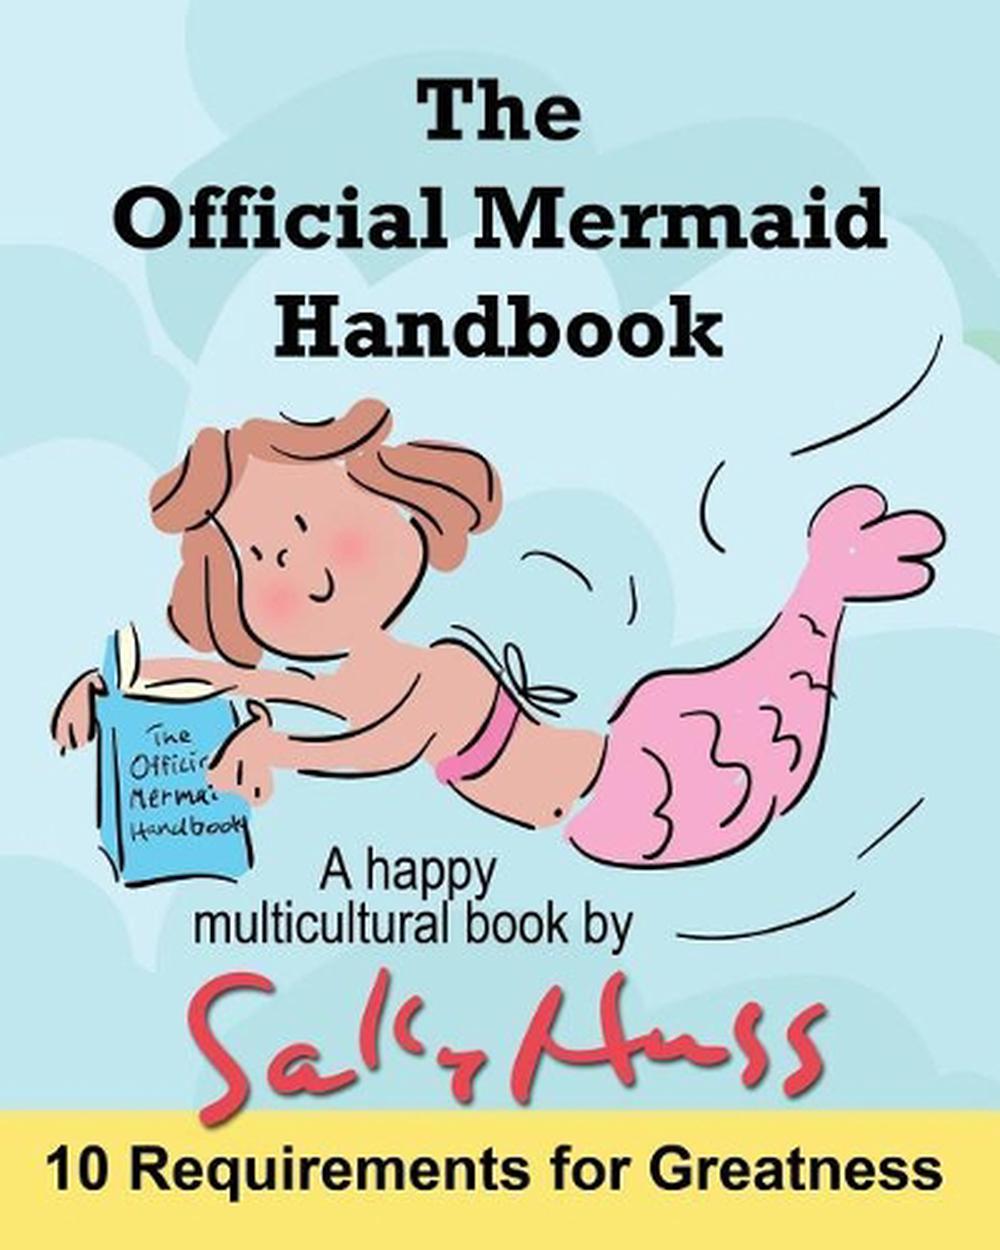 mermaid handbook